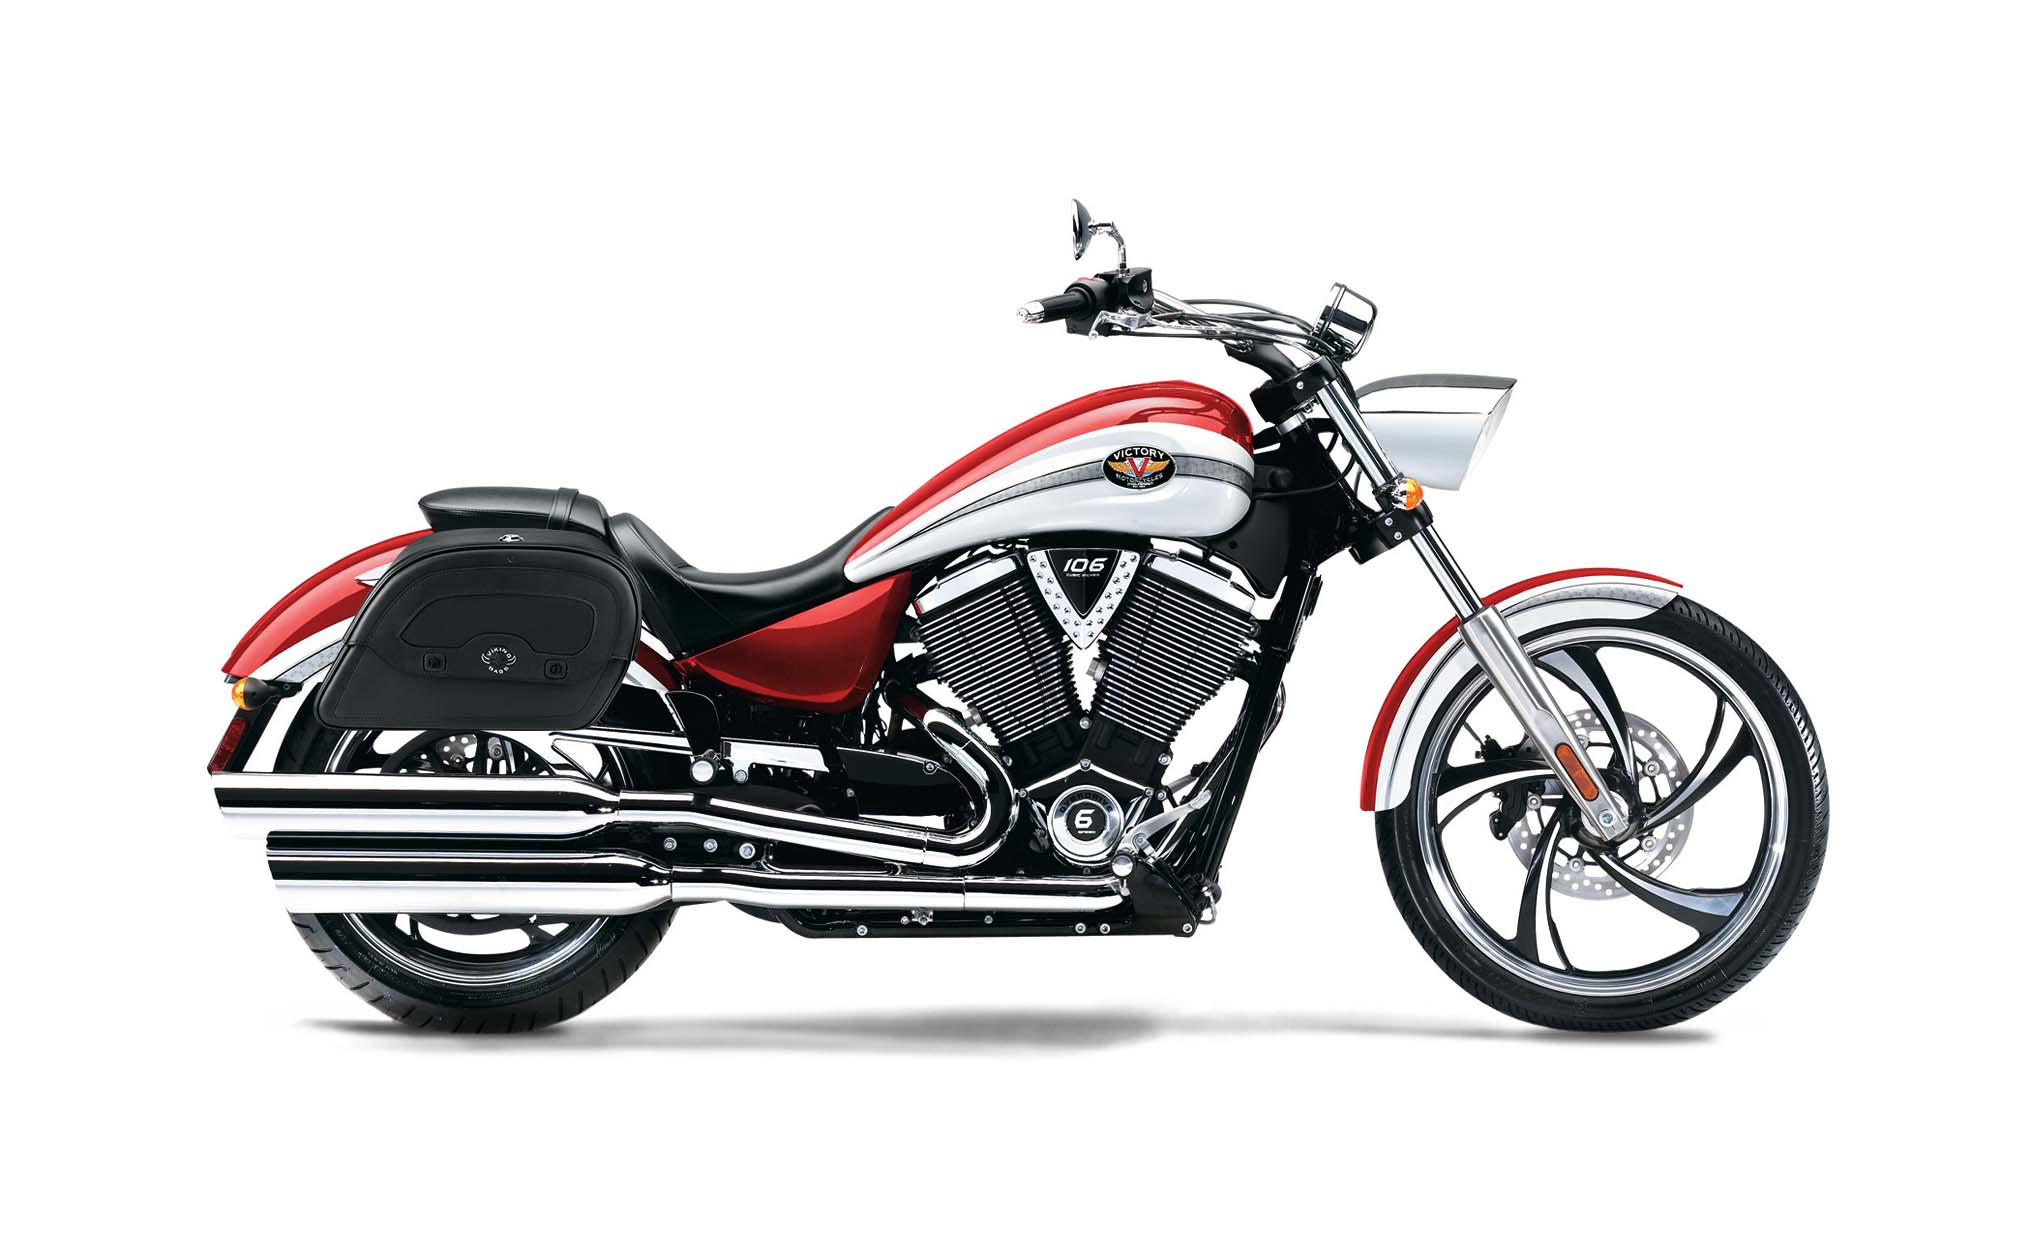 Viking Warrior Medium Victory Vegas Leather Motorcycle Saddlebags on Bike Photo @expand